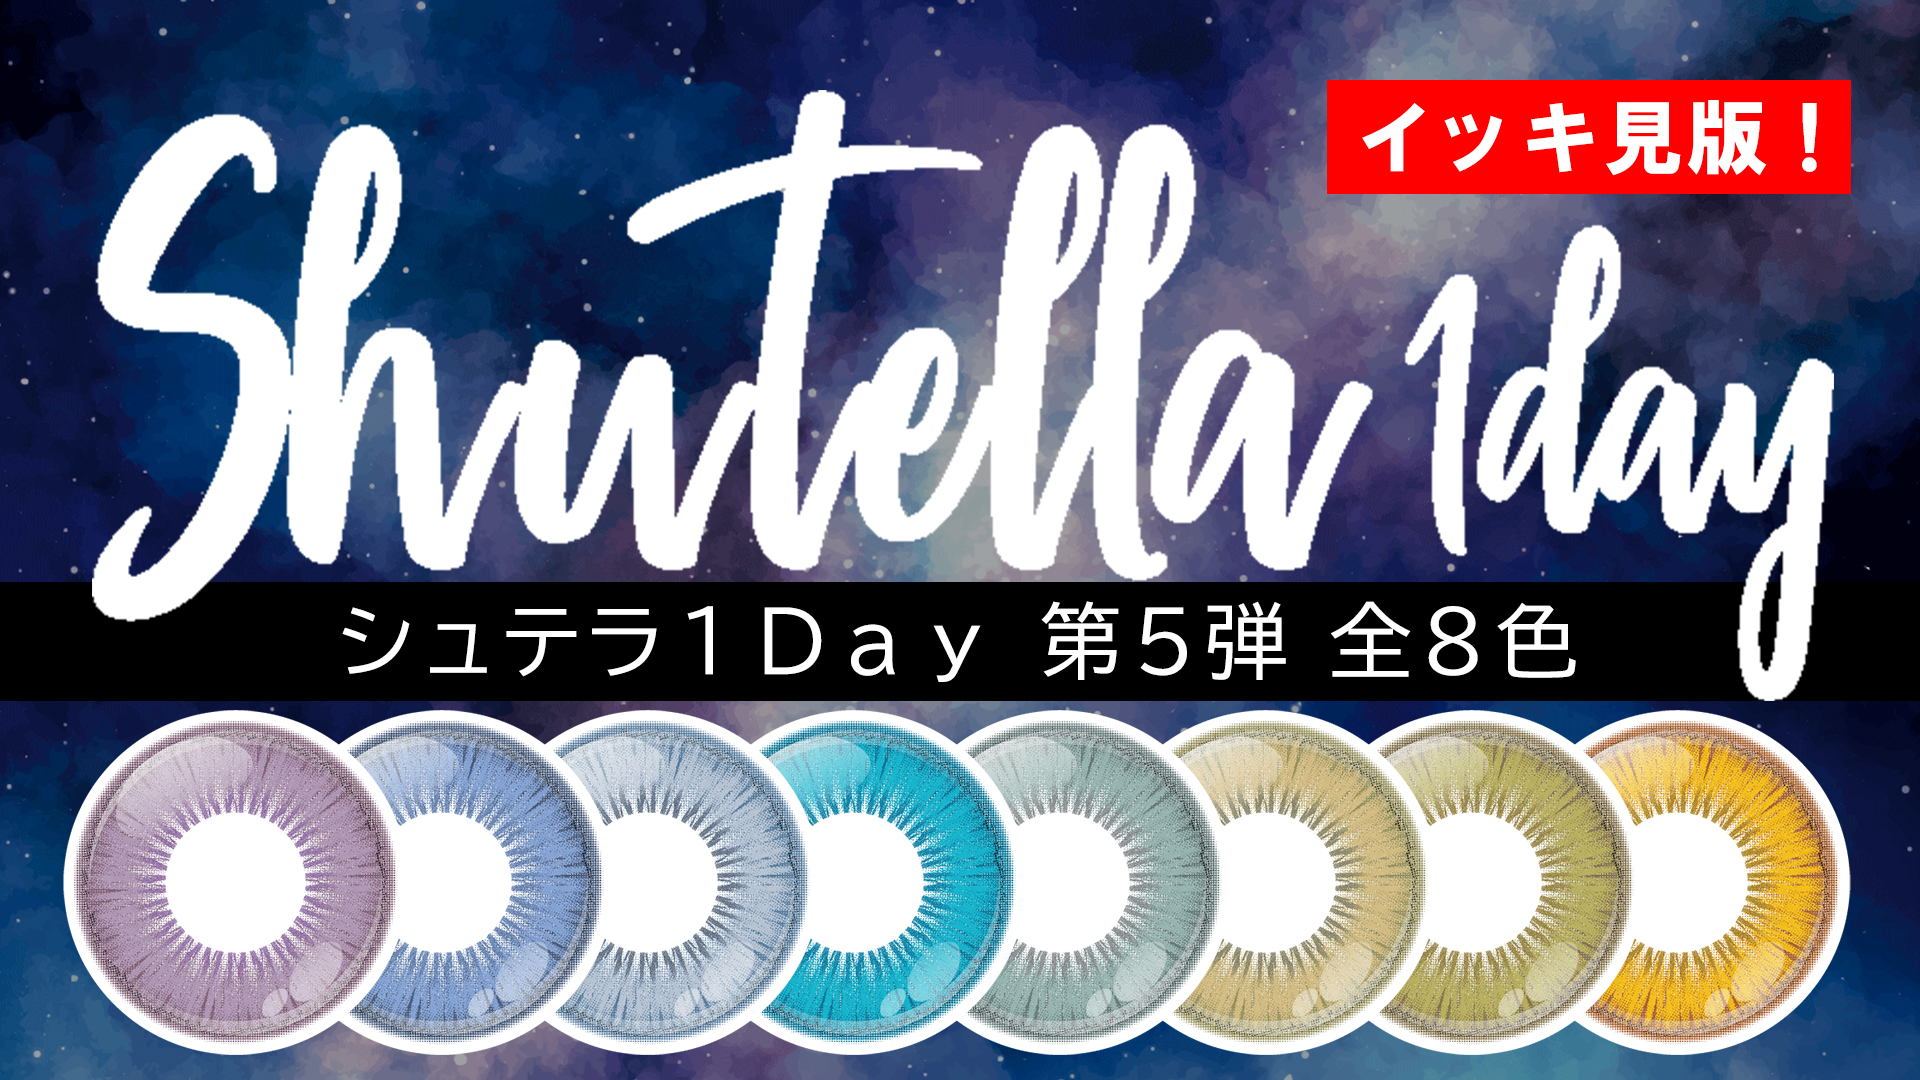 【新色】Shutella(シュテラ) 1Day第5弾 全8色 一気見!【1/12発売!】